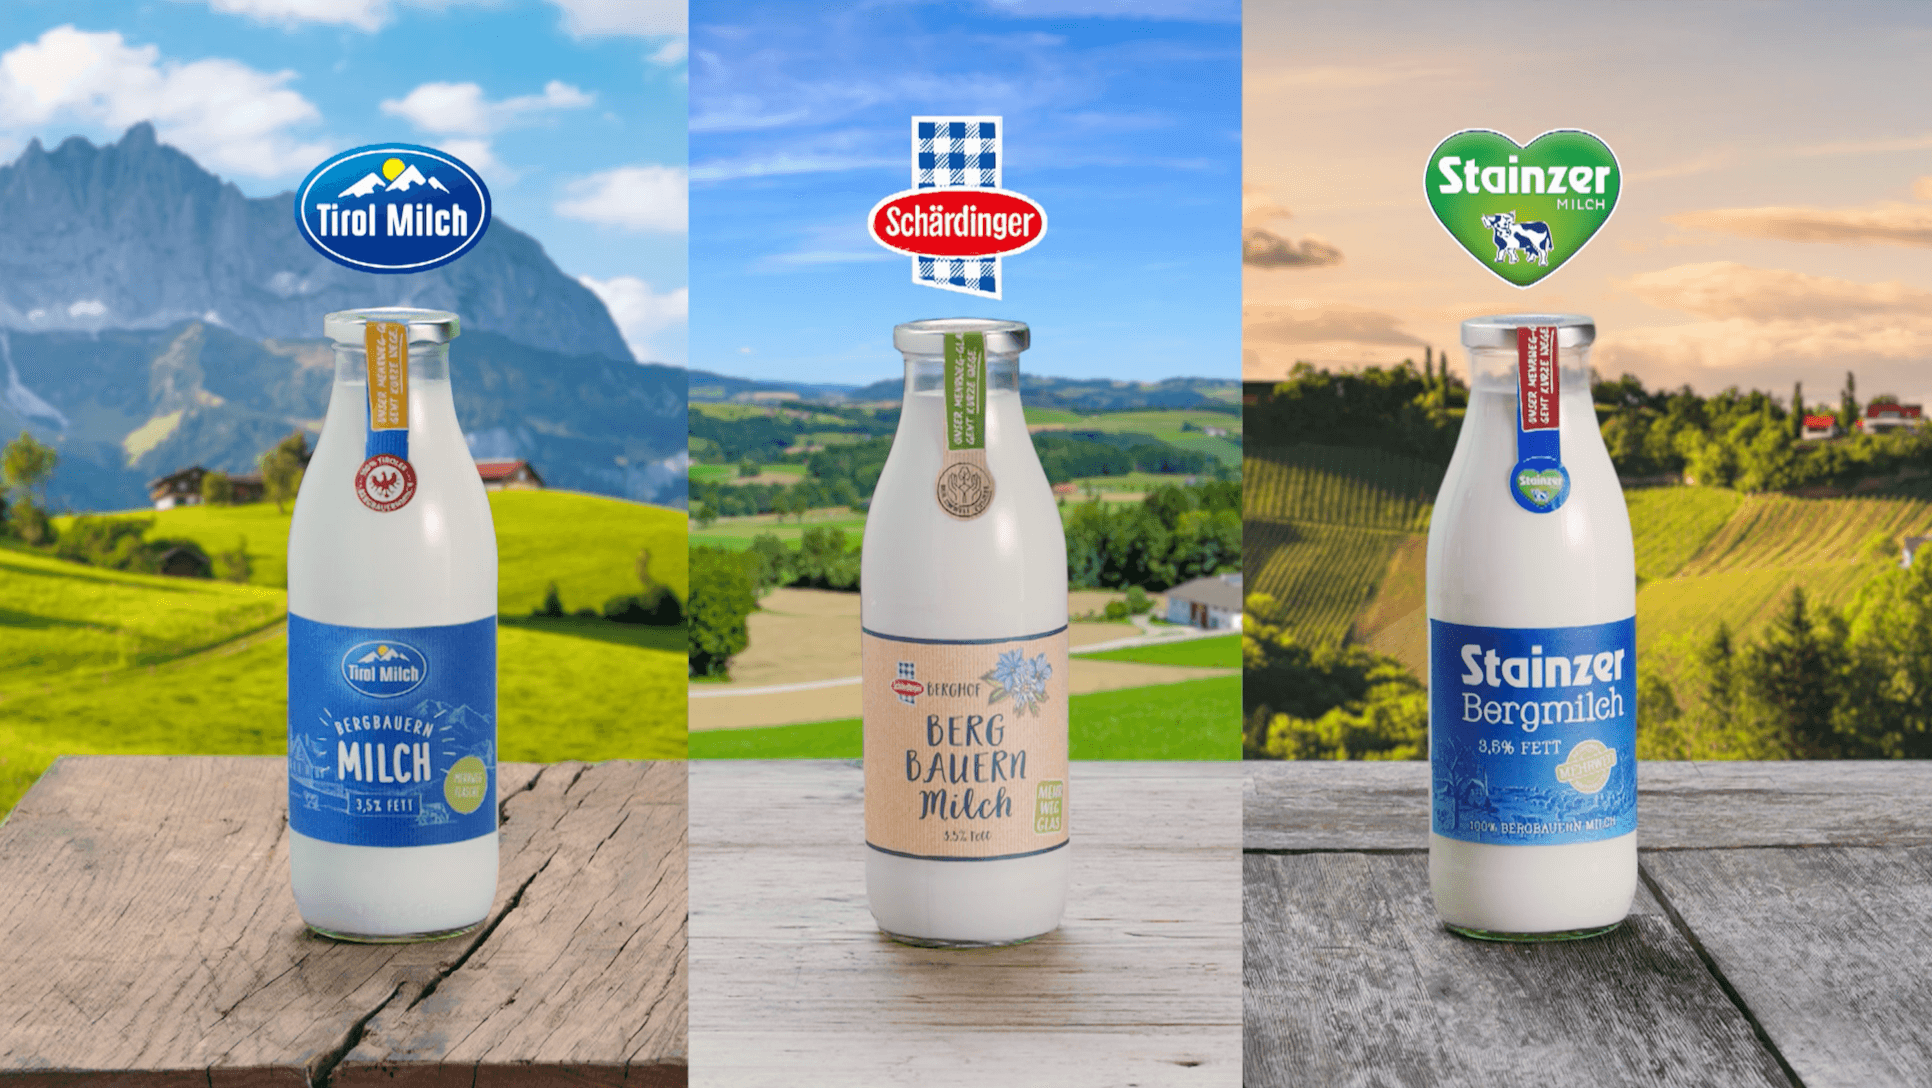 Werbespot der Factory für Berglandmilch zu Regionalität